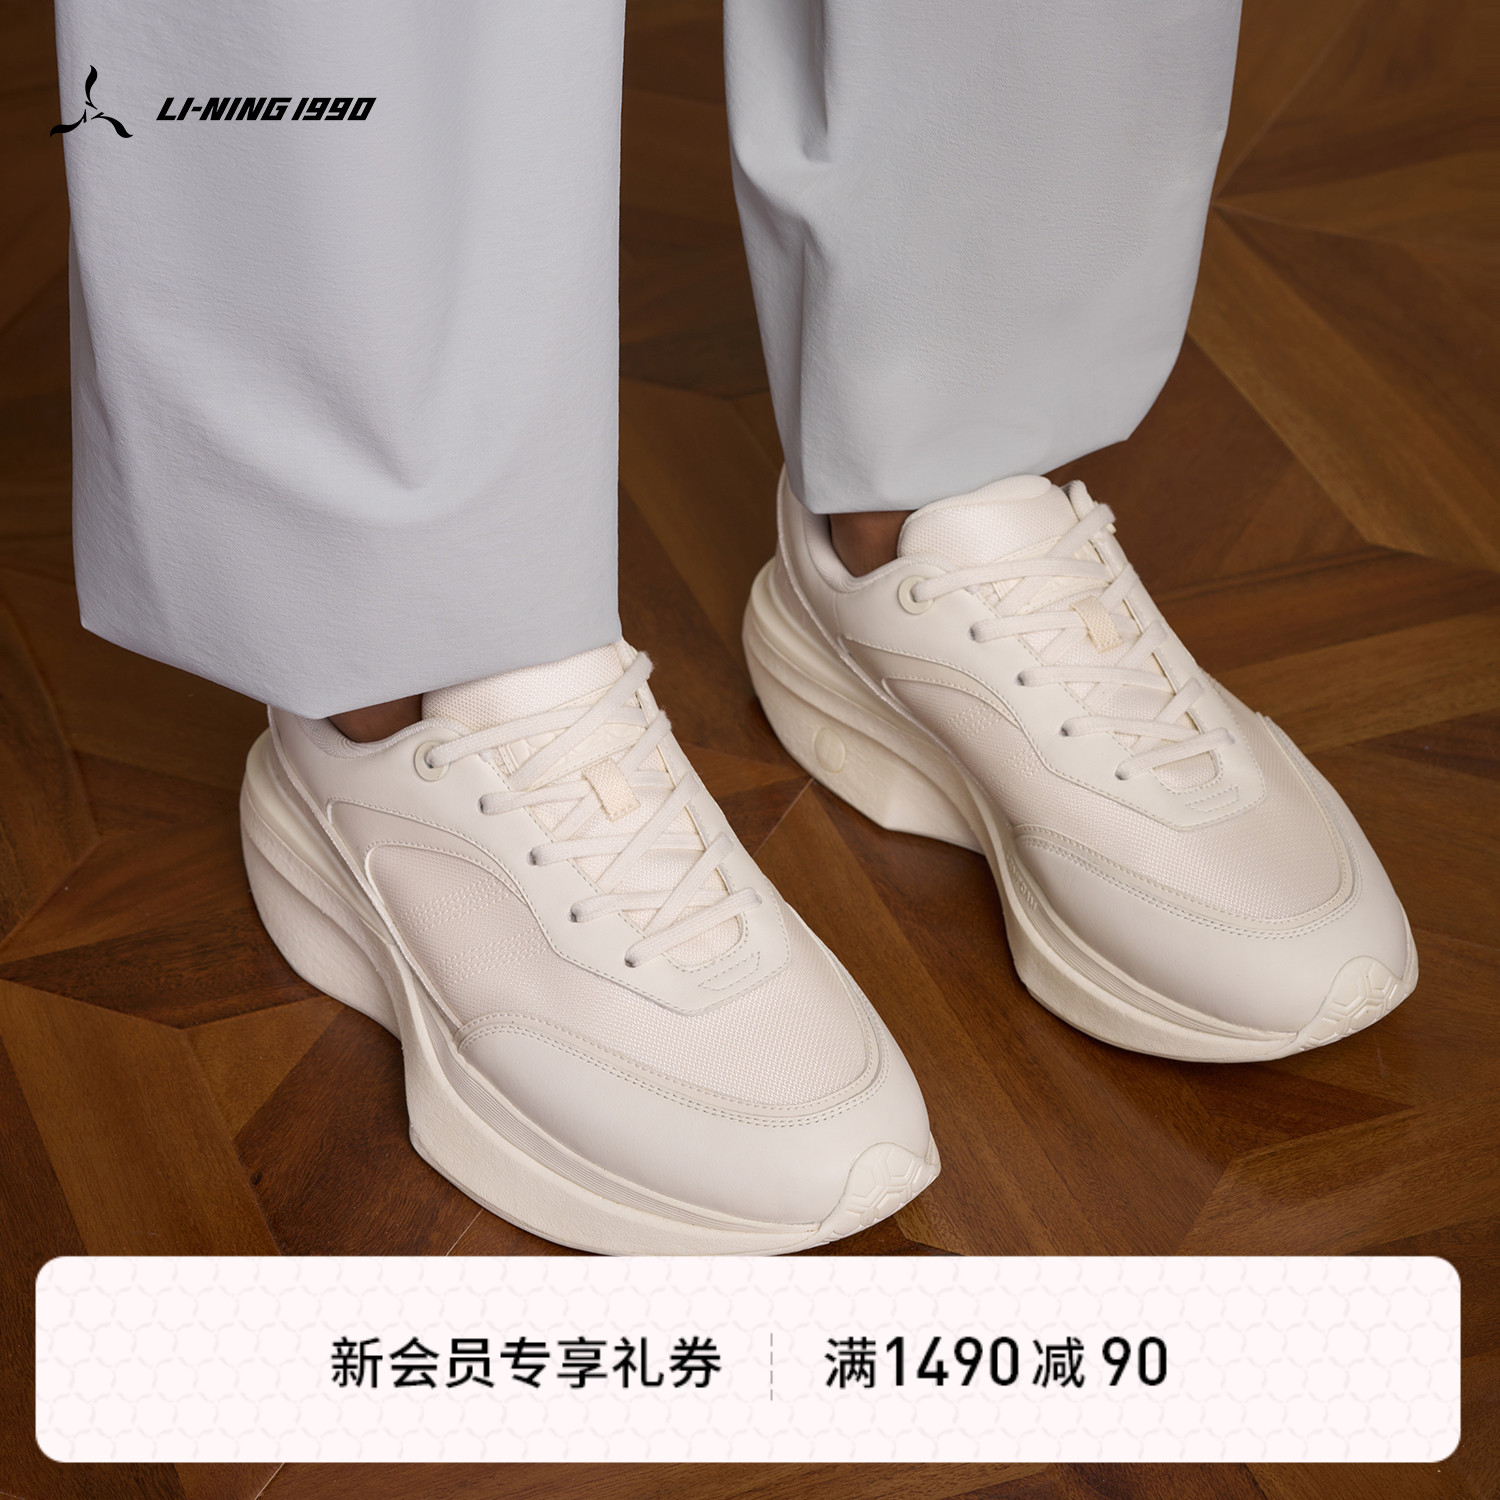 LI-NING1990 男士春夏璇玑复古运动休闲鞋 李宁1990经典系列